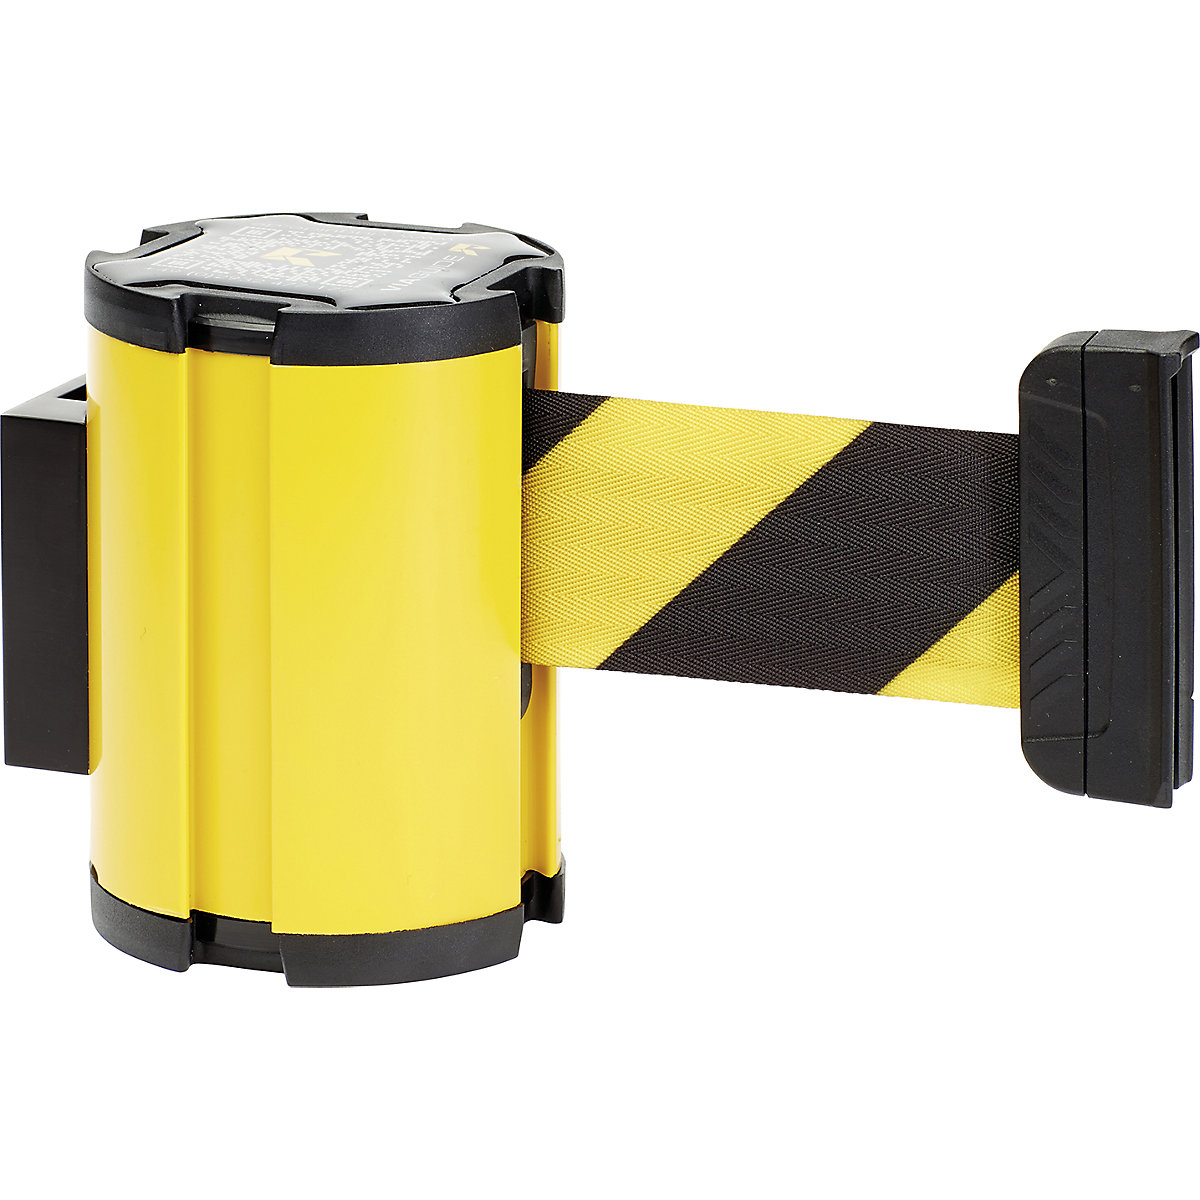 Kazeta s pásom, vytiahnutie pásky max. 3000 mm, kazeta žltá, pás žltá / čierna-2